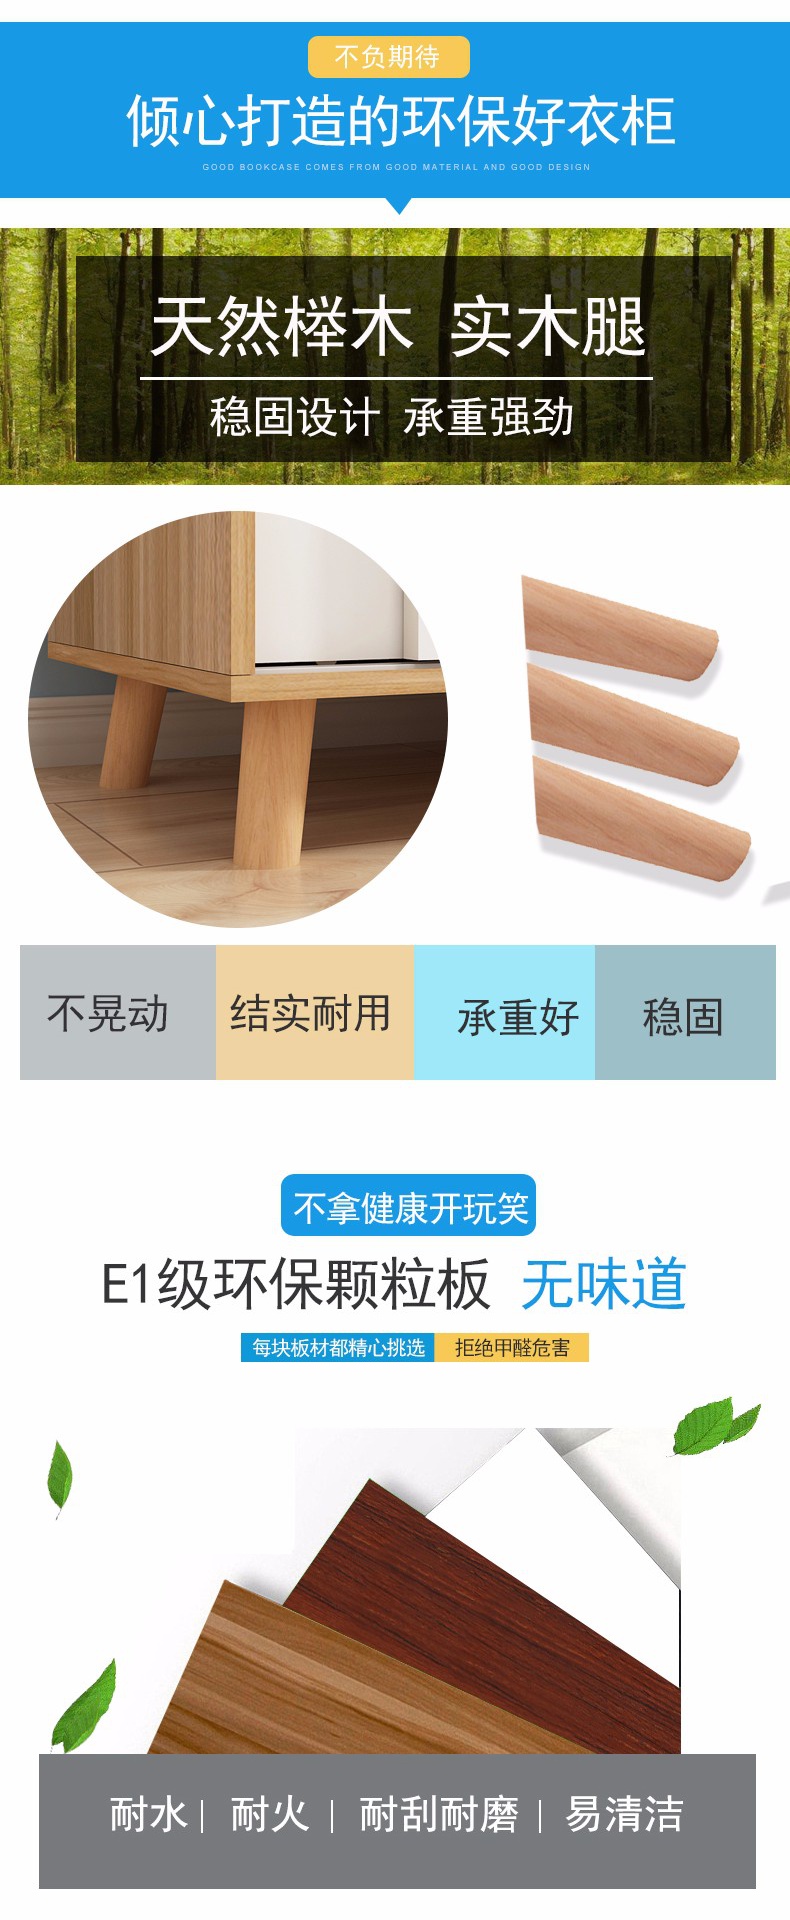 其他 家装风格:其他 家具材质:木质 开合方式:前开式 家具结构:薄壳